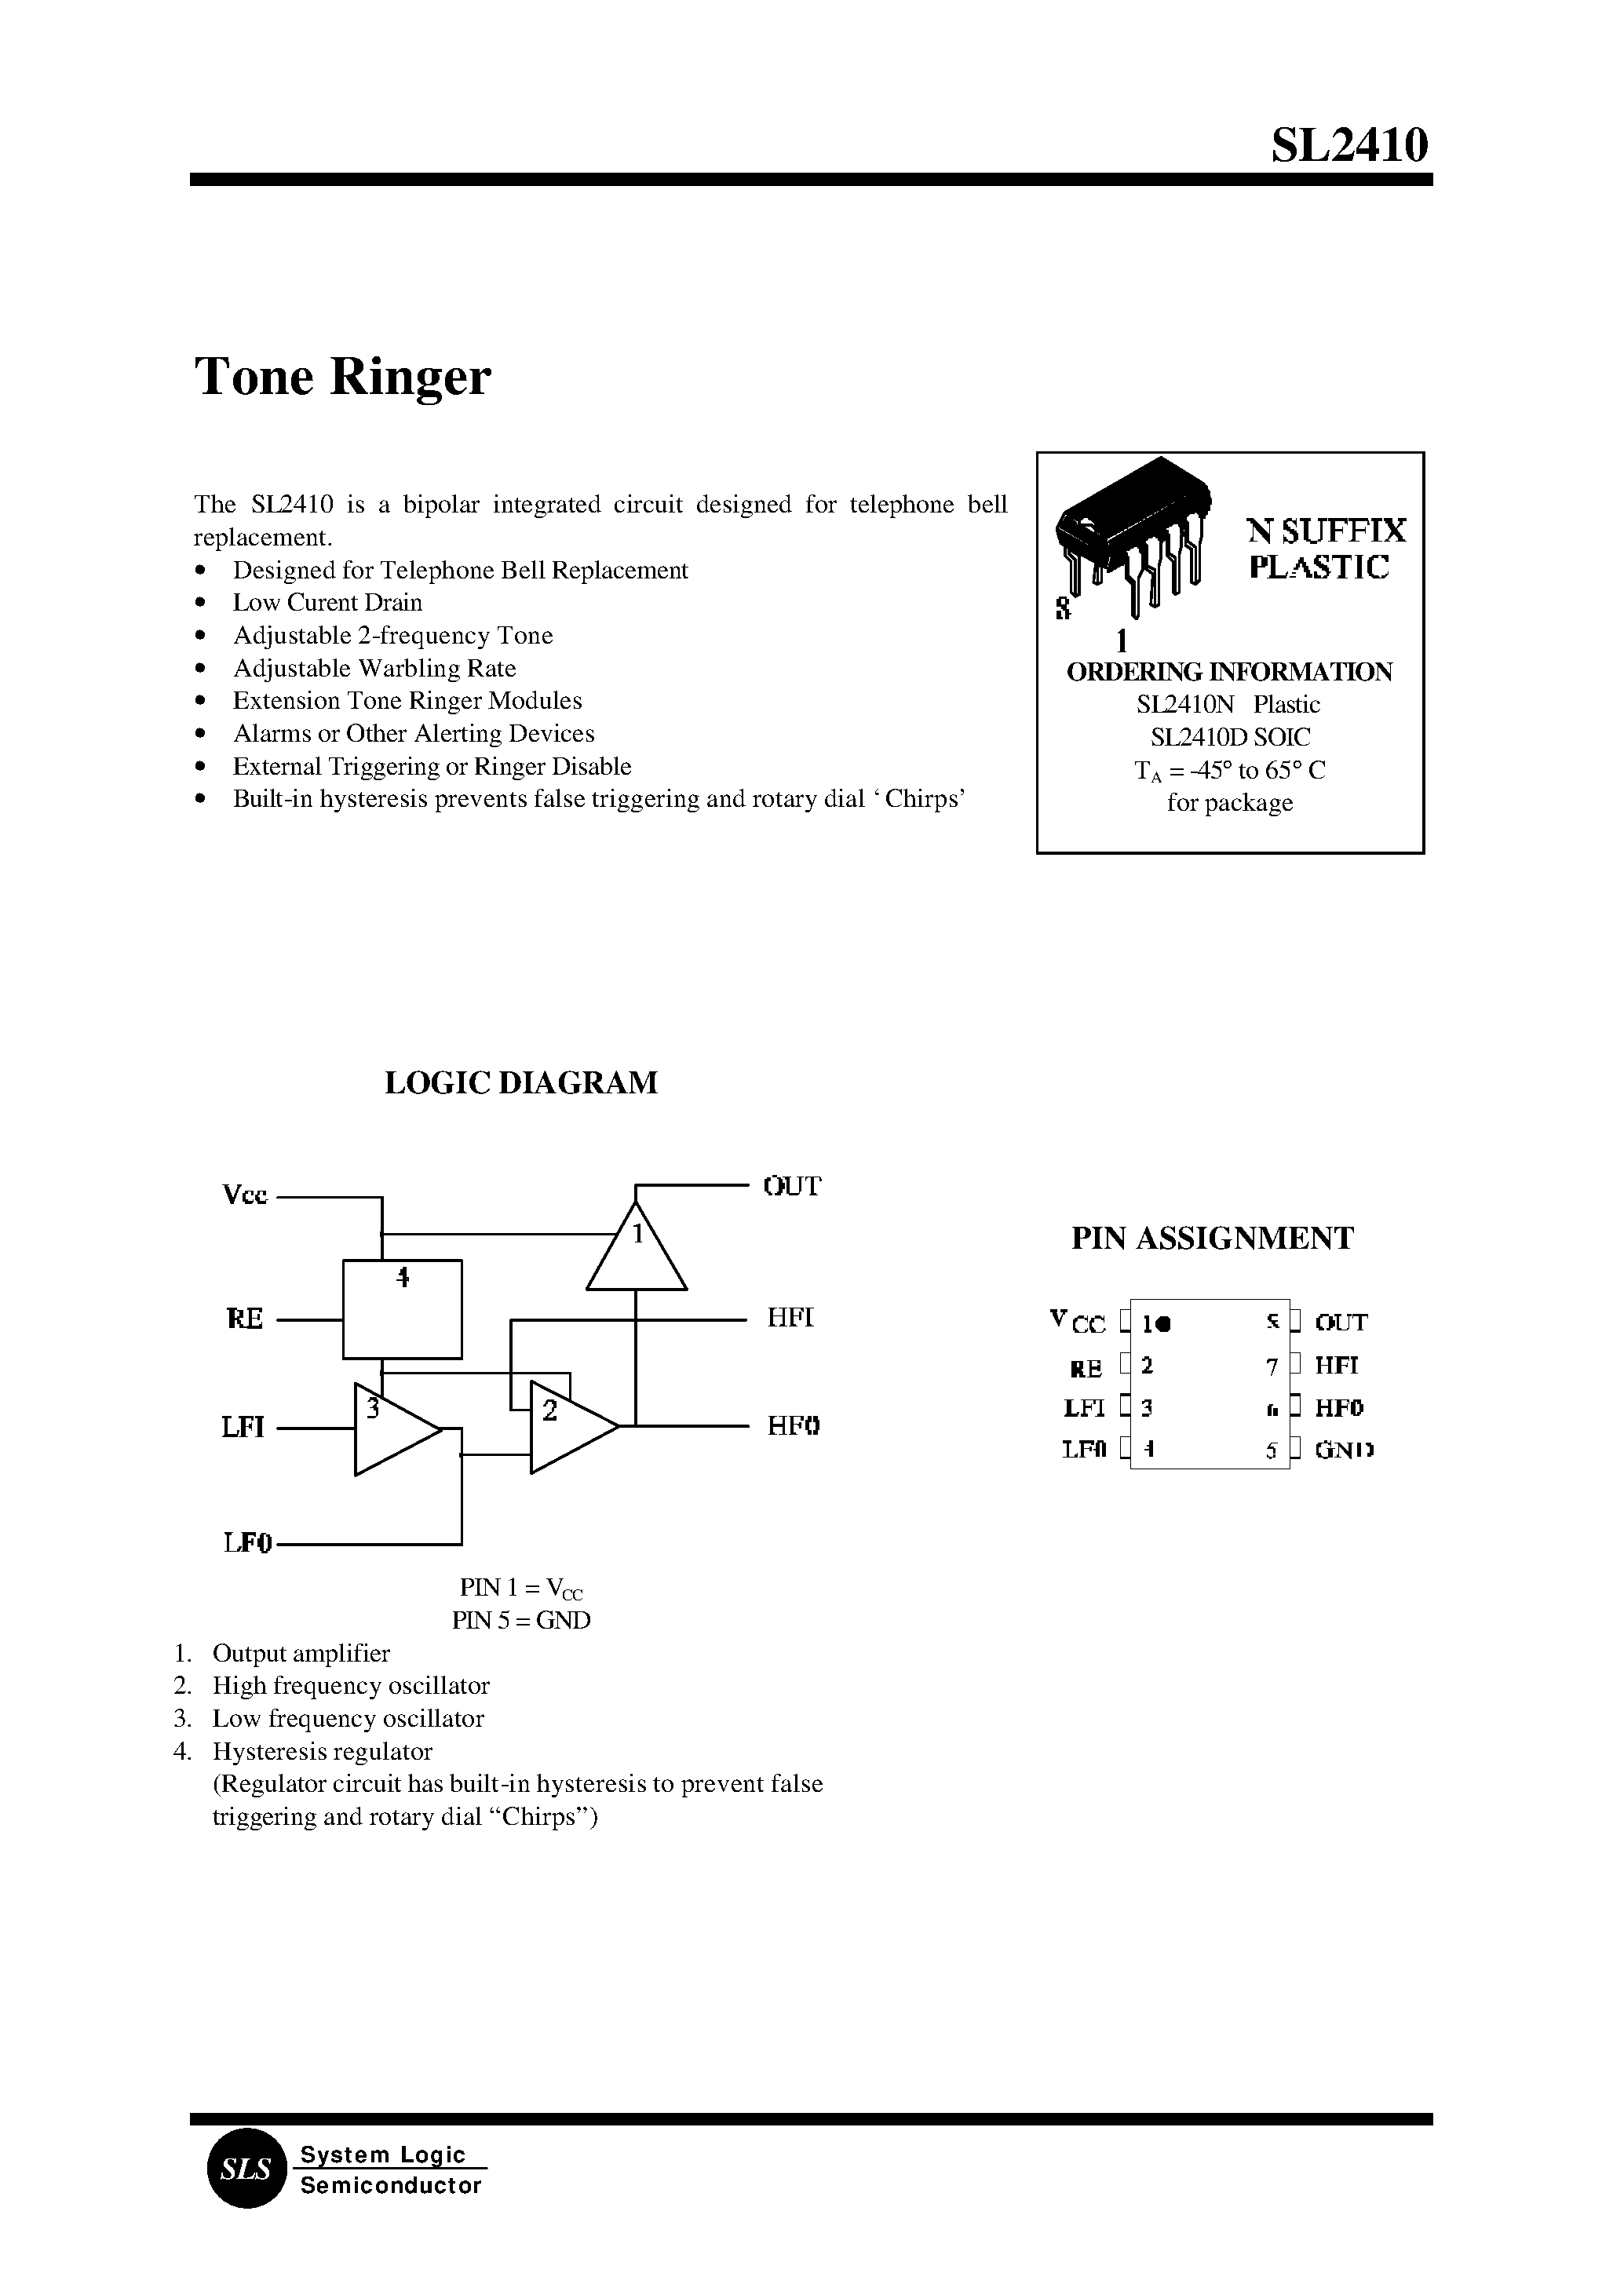 Datasheet SL2410 - Tone Ringer page 1